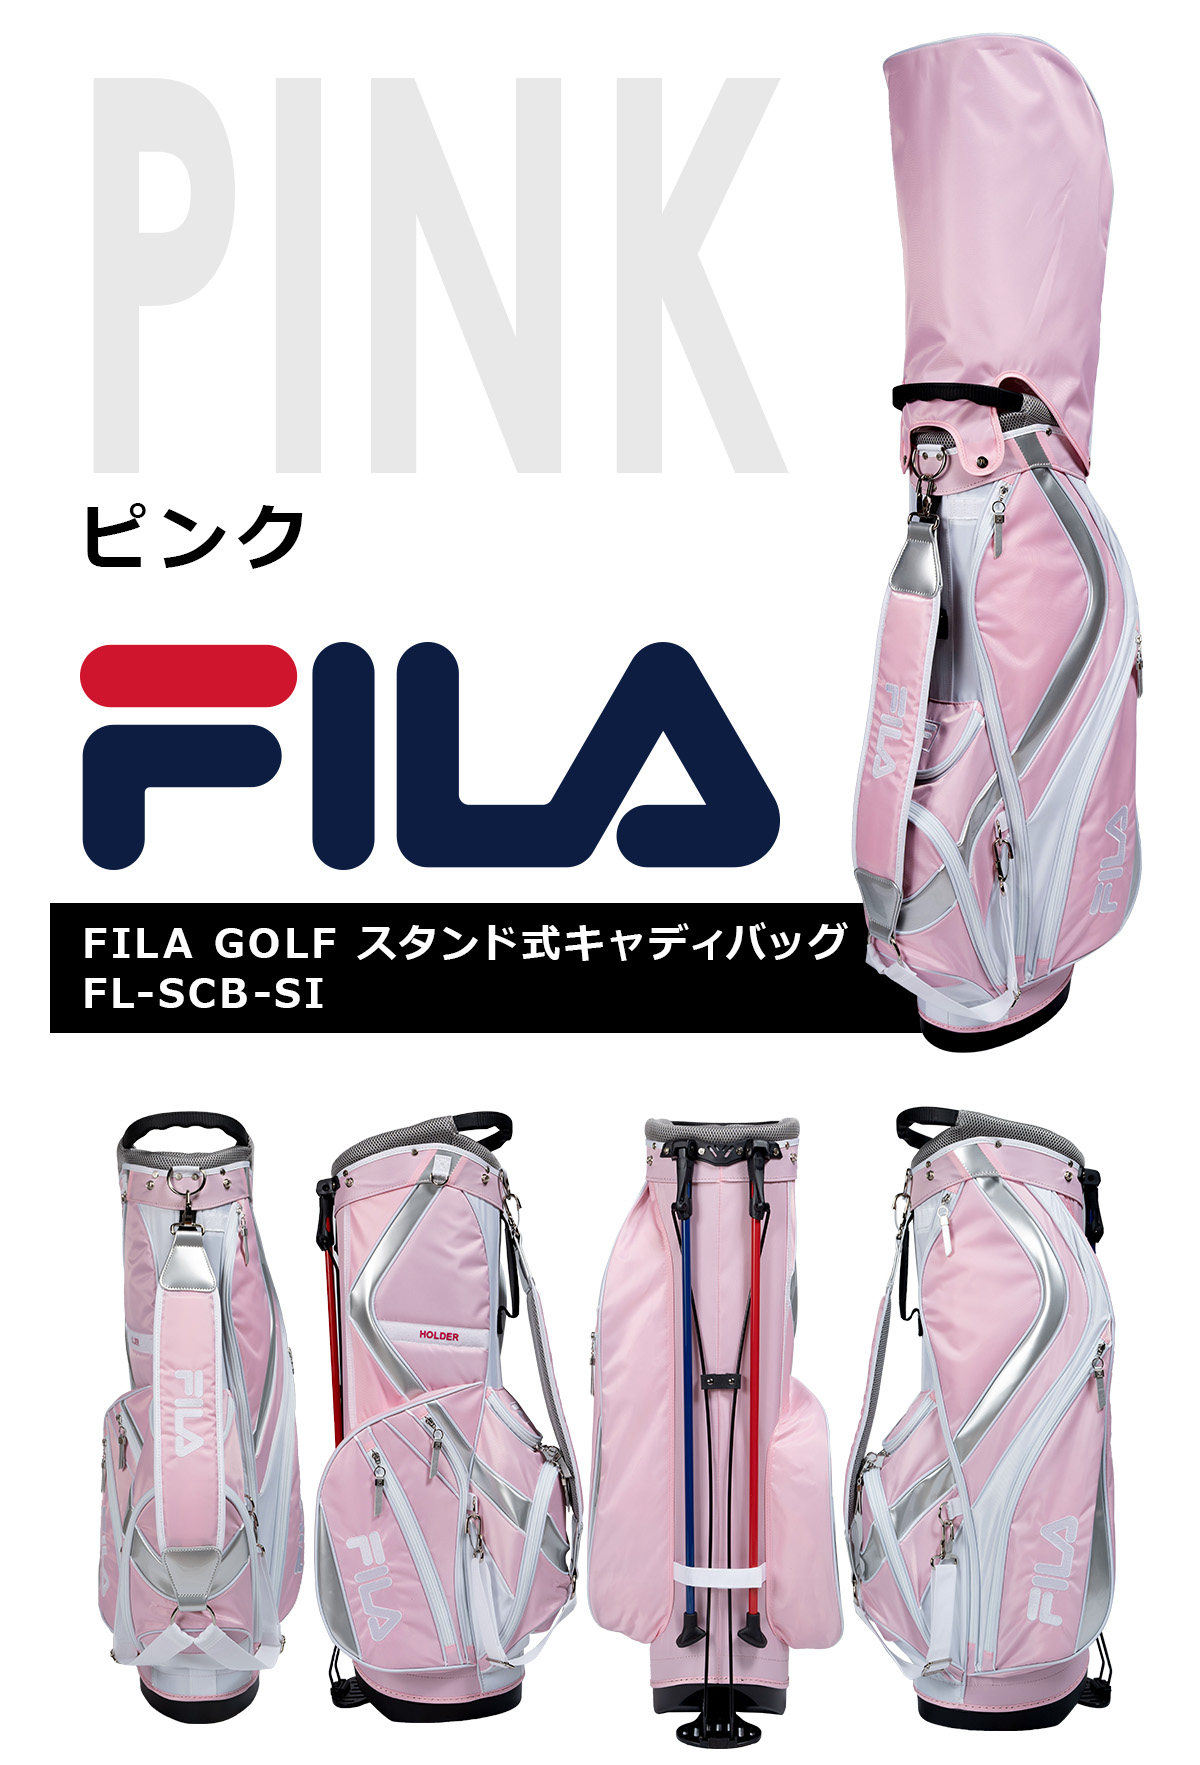 ゴルフ FILA GOLF スタンド式キャディバッグ FL-SCB-SI スポーティーで軽量タイプ 9型 男女兼用